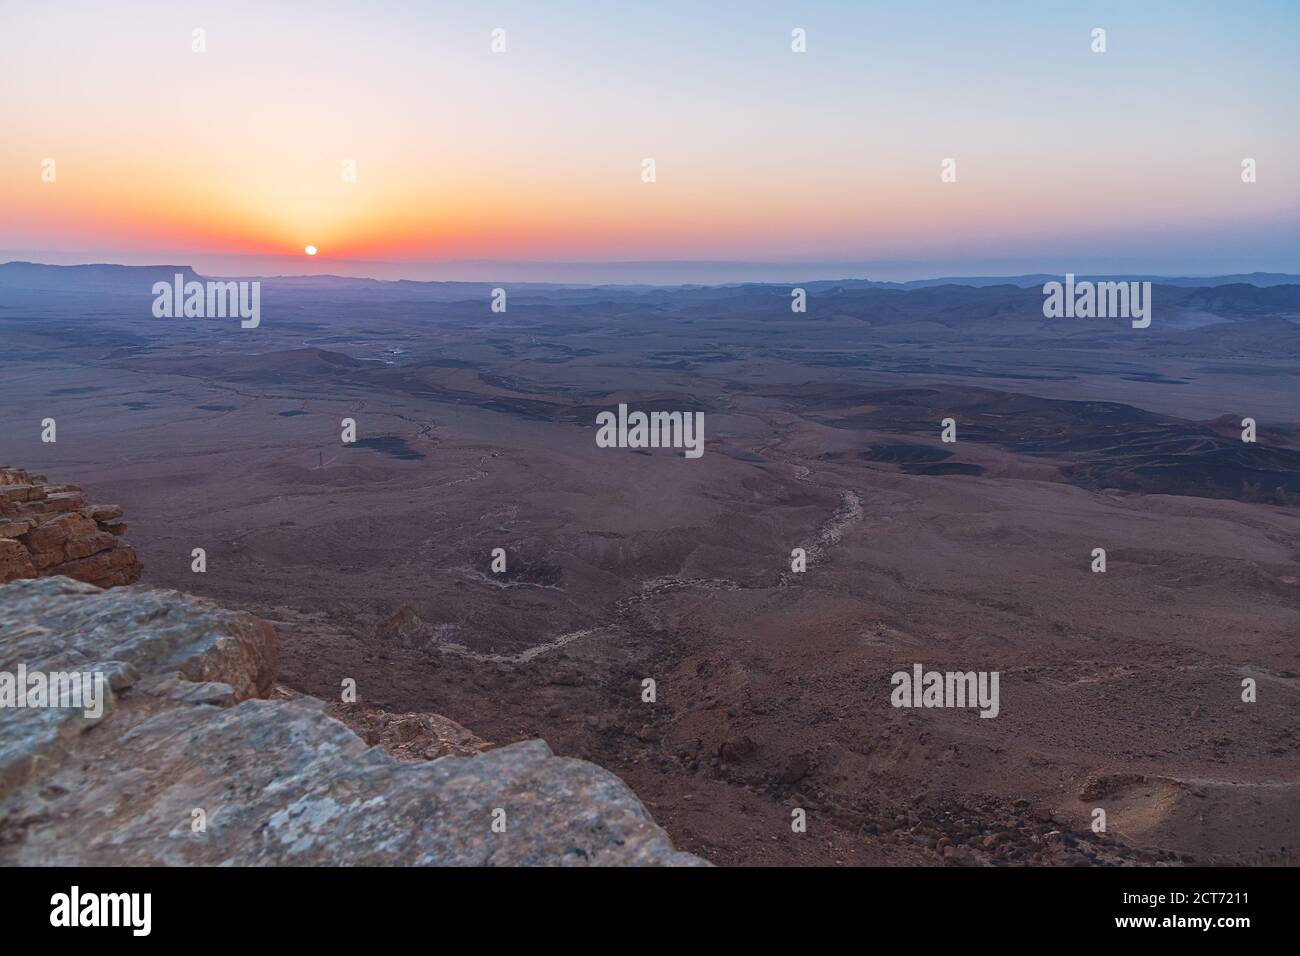 Ein flammender wolkenloser Sonnenaufgang, der die Weite und Geologie von zeigt Der Krater makhesh ramon in der negev-Wüste in israel Stockfoto